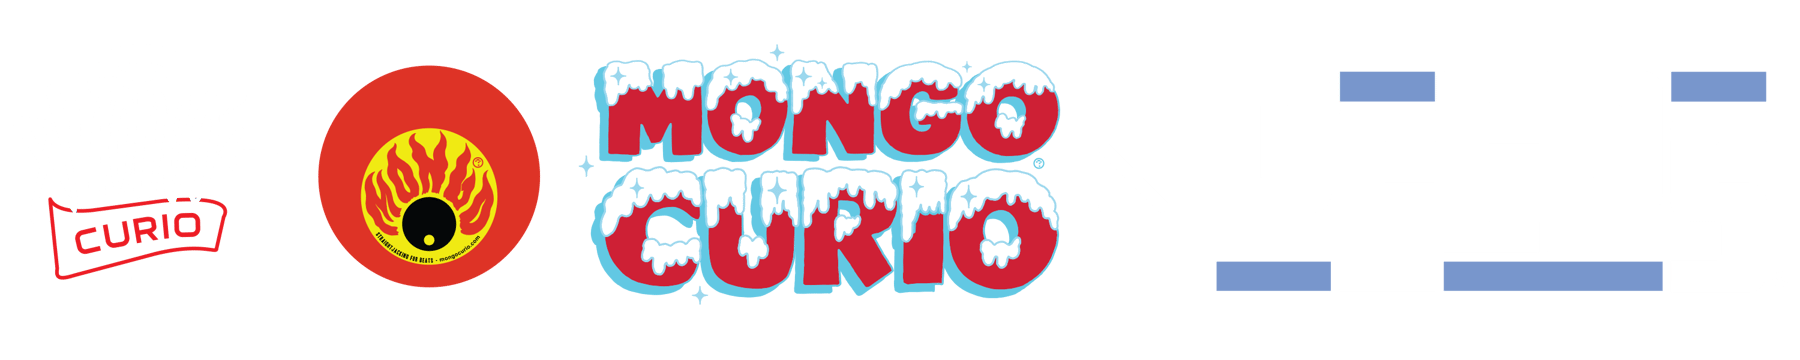 MONGO CURIO